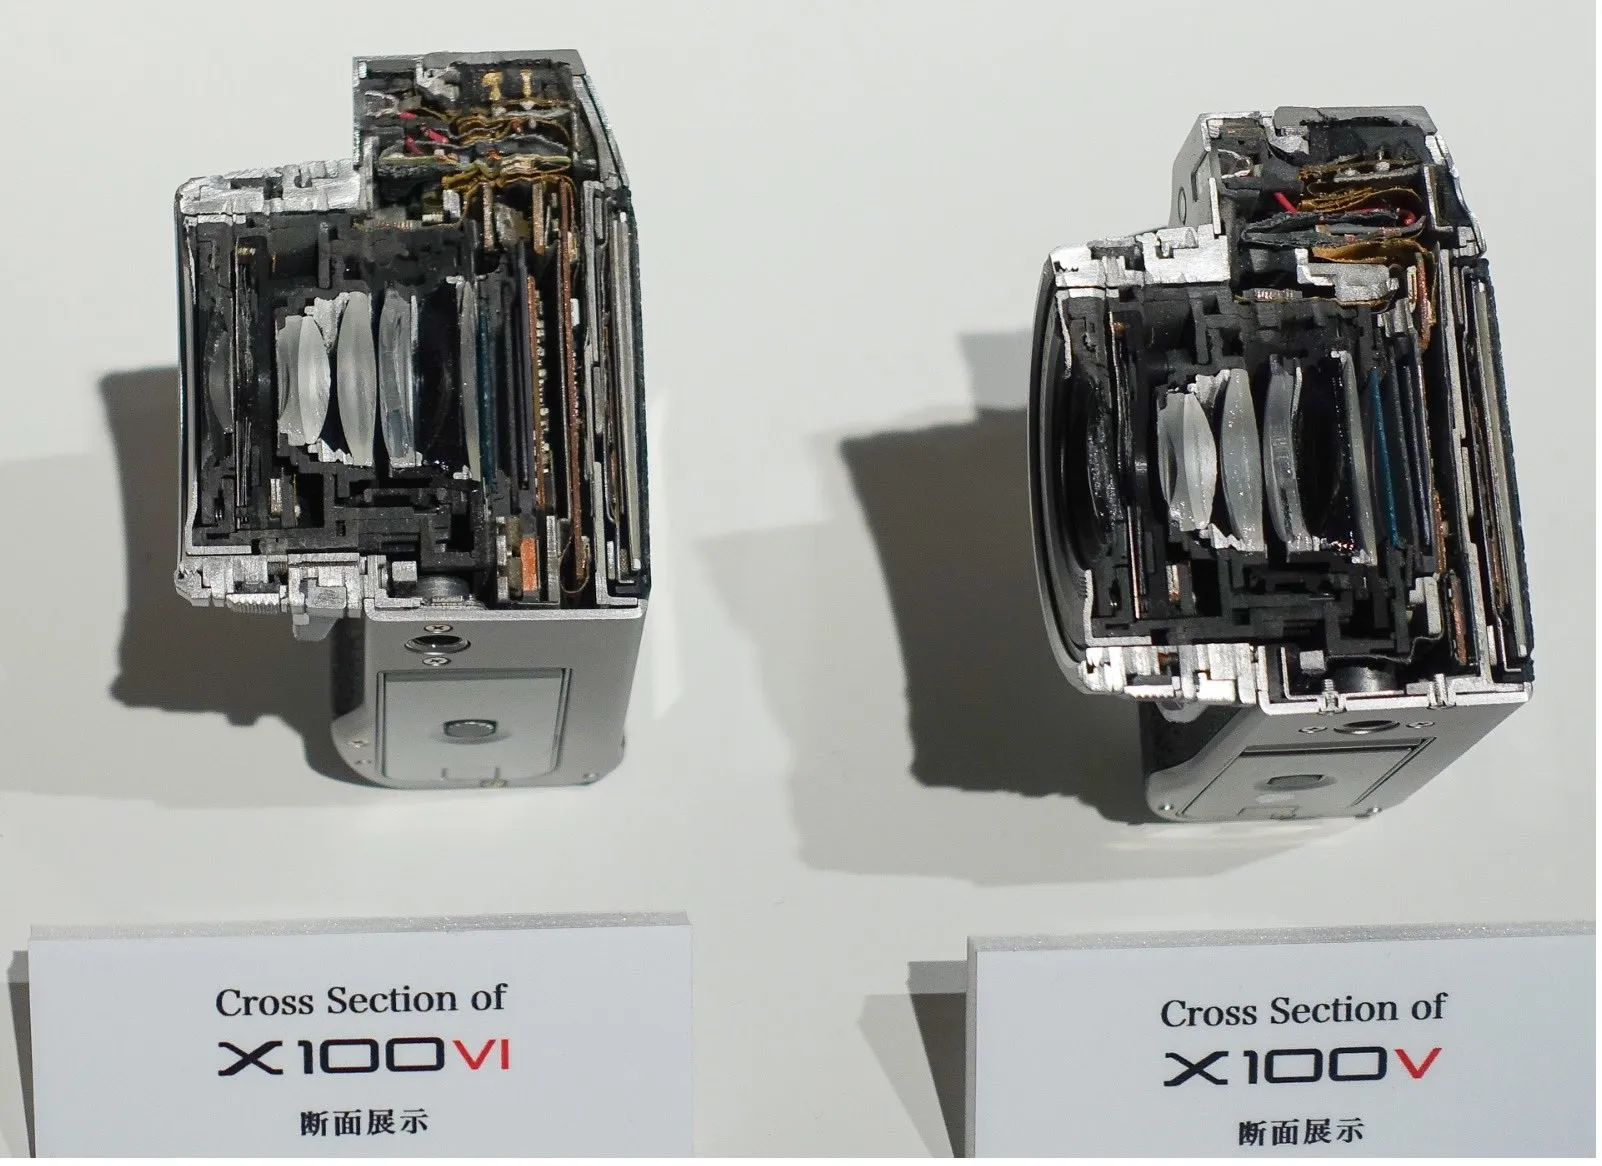 Cắt đôi Fujifilm X100VI và X100V để so sánh kích thước